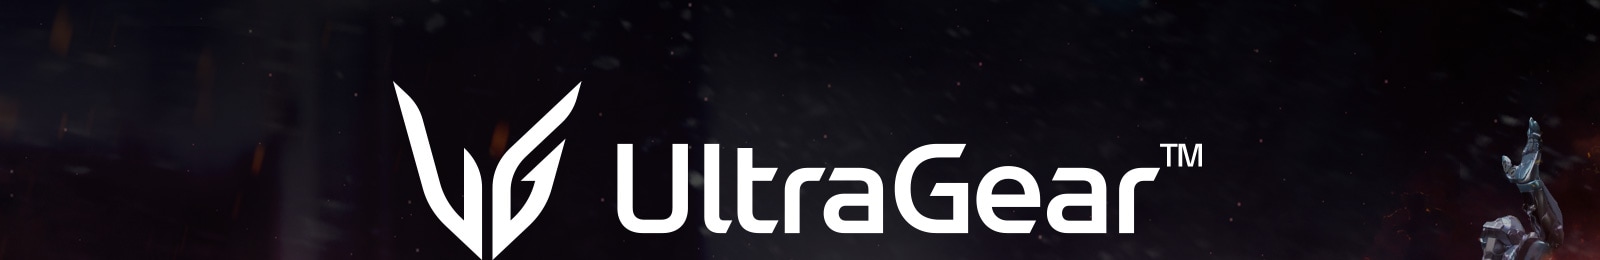 Логотип LG UltraGear.